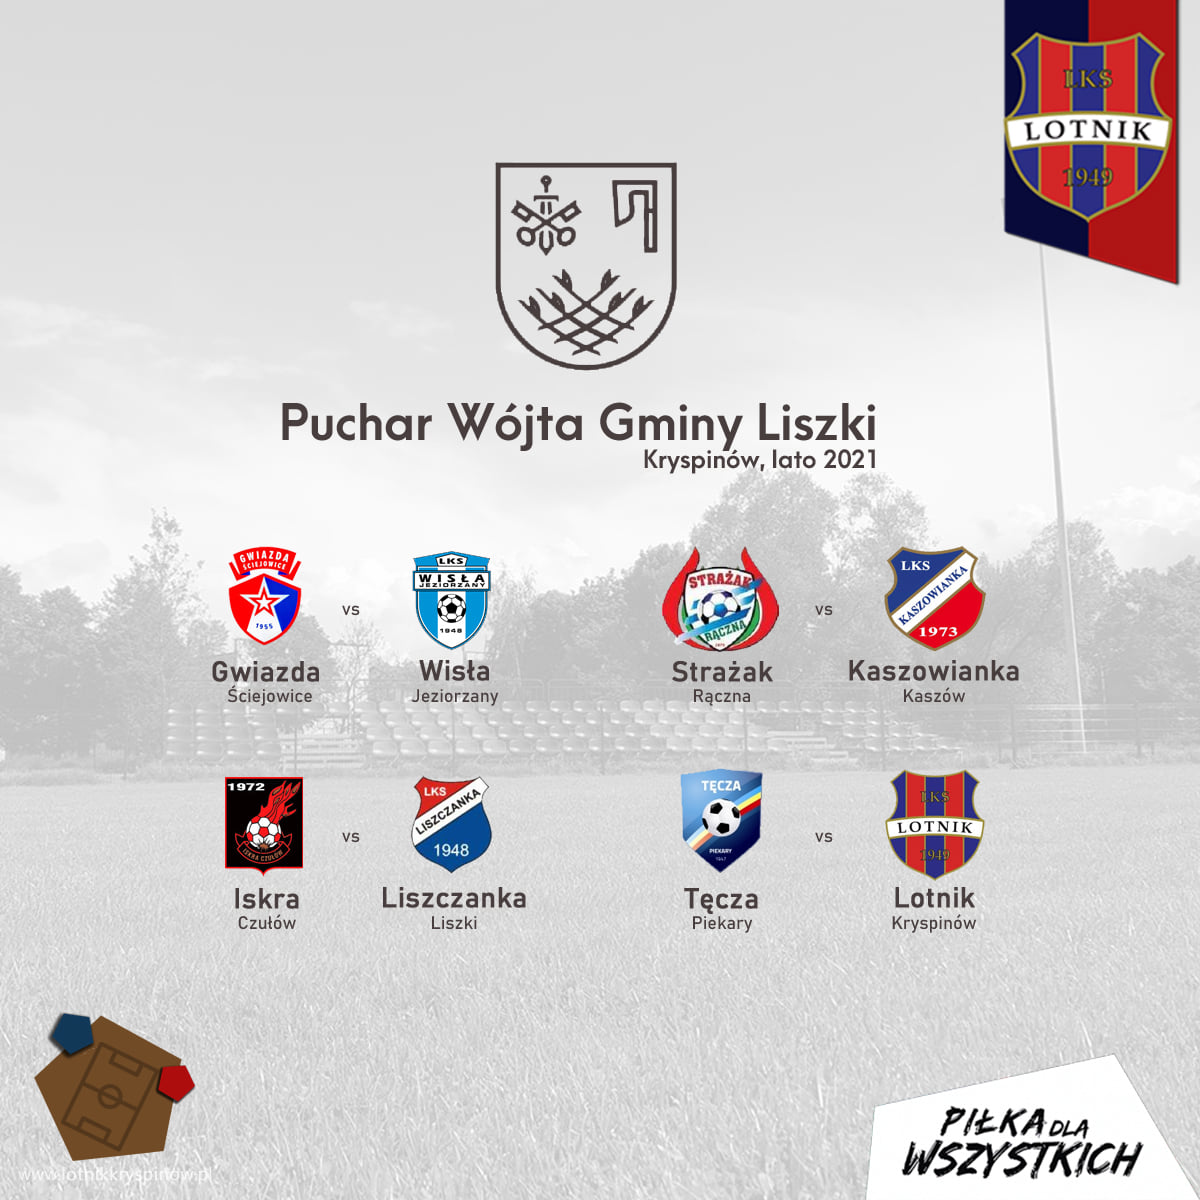 Puchar Wójta Gminy Liszki w piłce nożnej - Kryspinów 2021